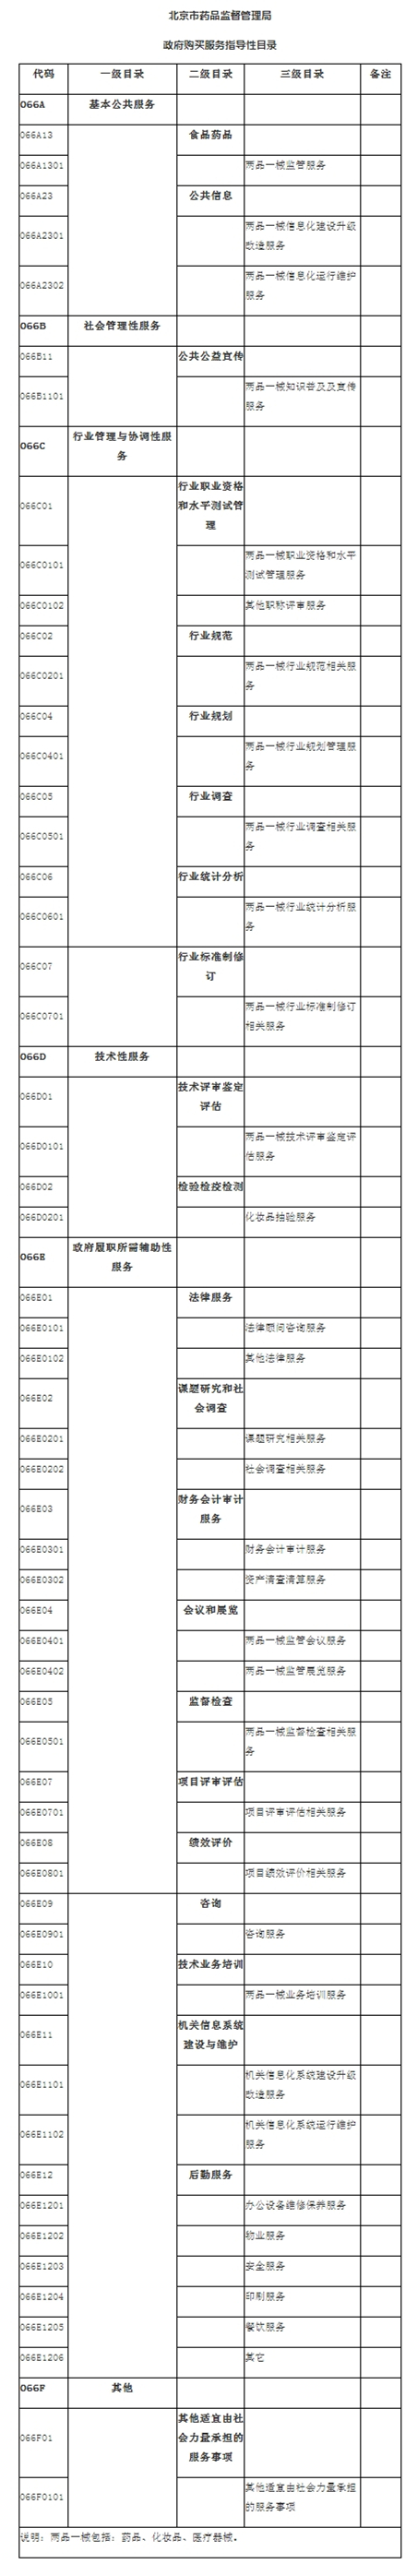 北京市药品监督管理局政府购买服务指导性目录.jpg